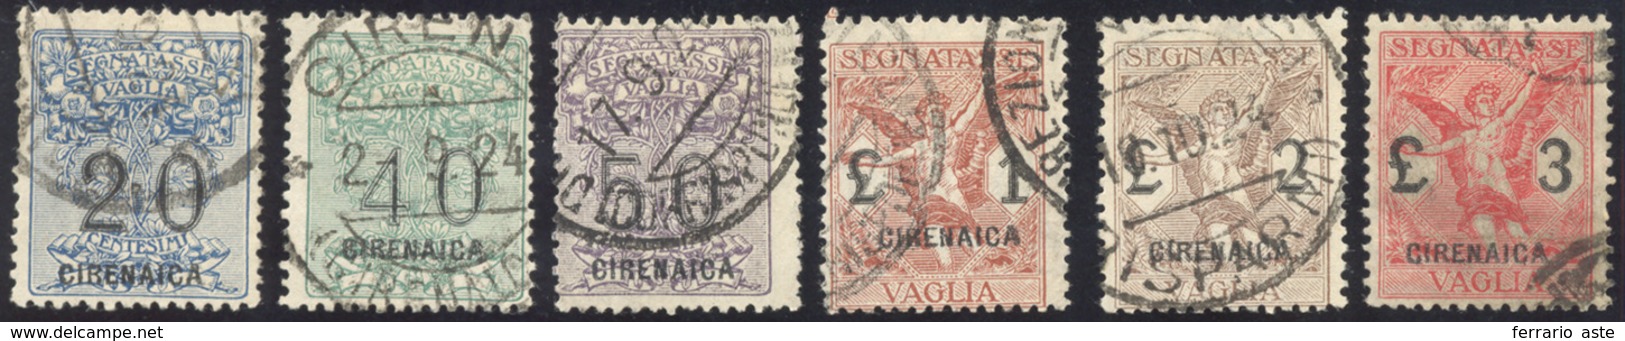 2418 SEGNATASSE VAGLIA 1924 - Serie Completa (1/6), Usati, Perfetti. Cert. Diena.... - Cirenaica